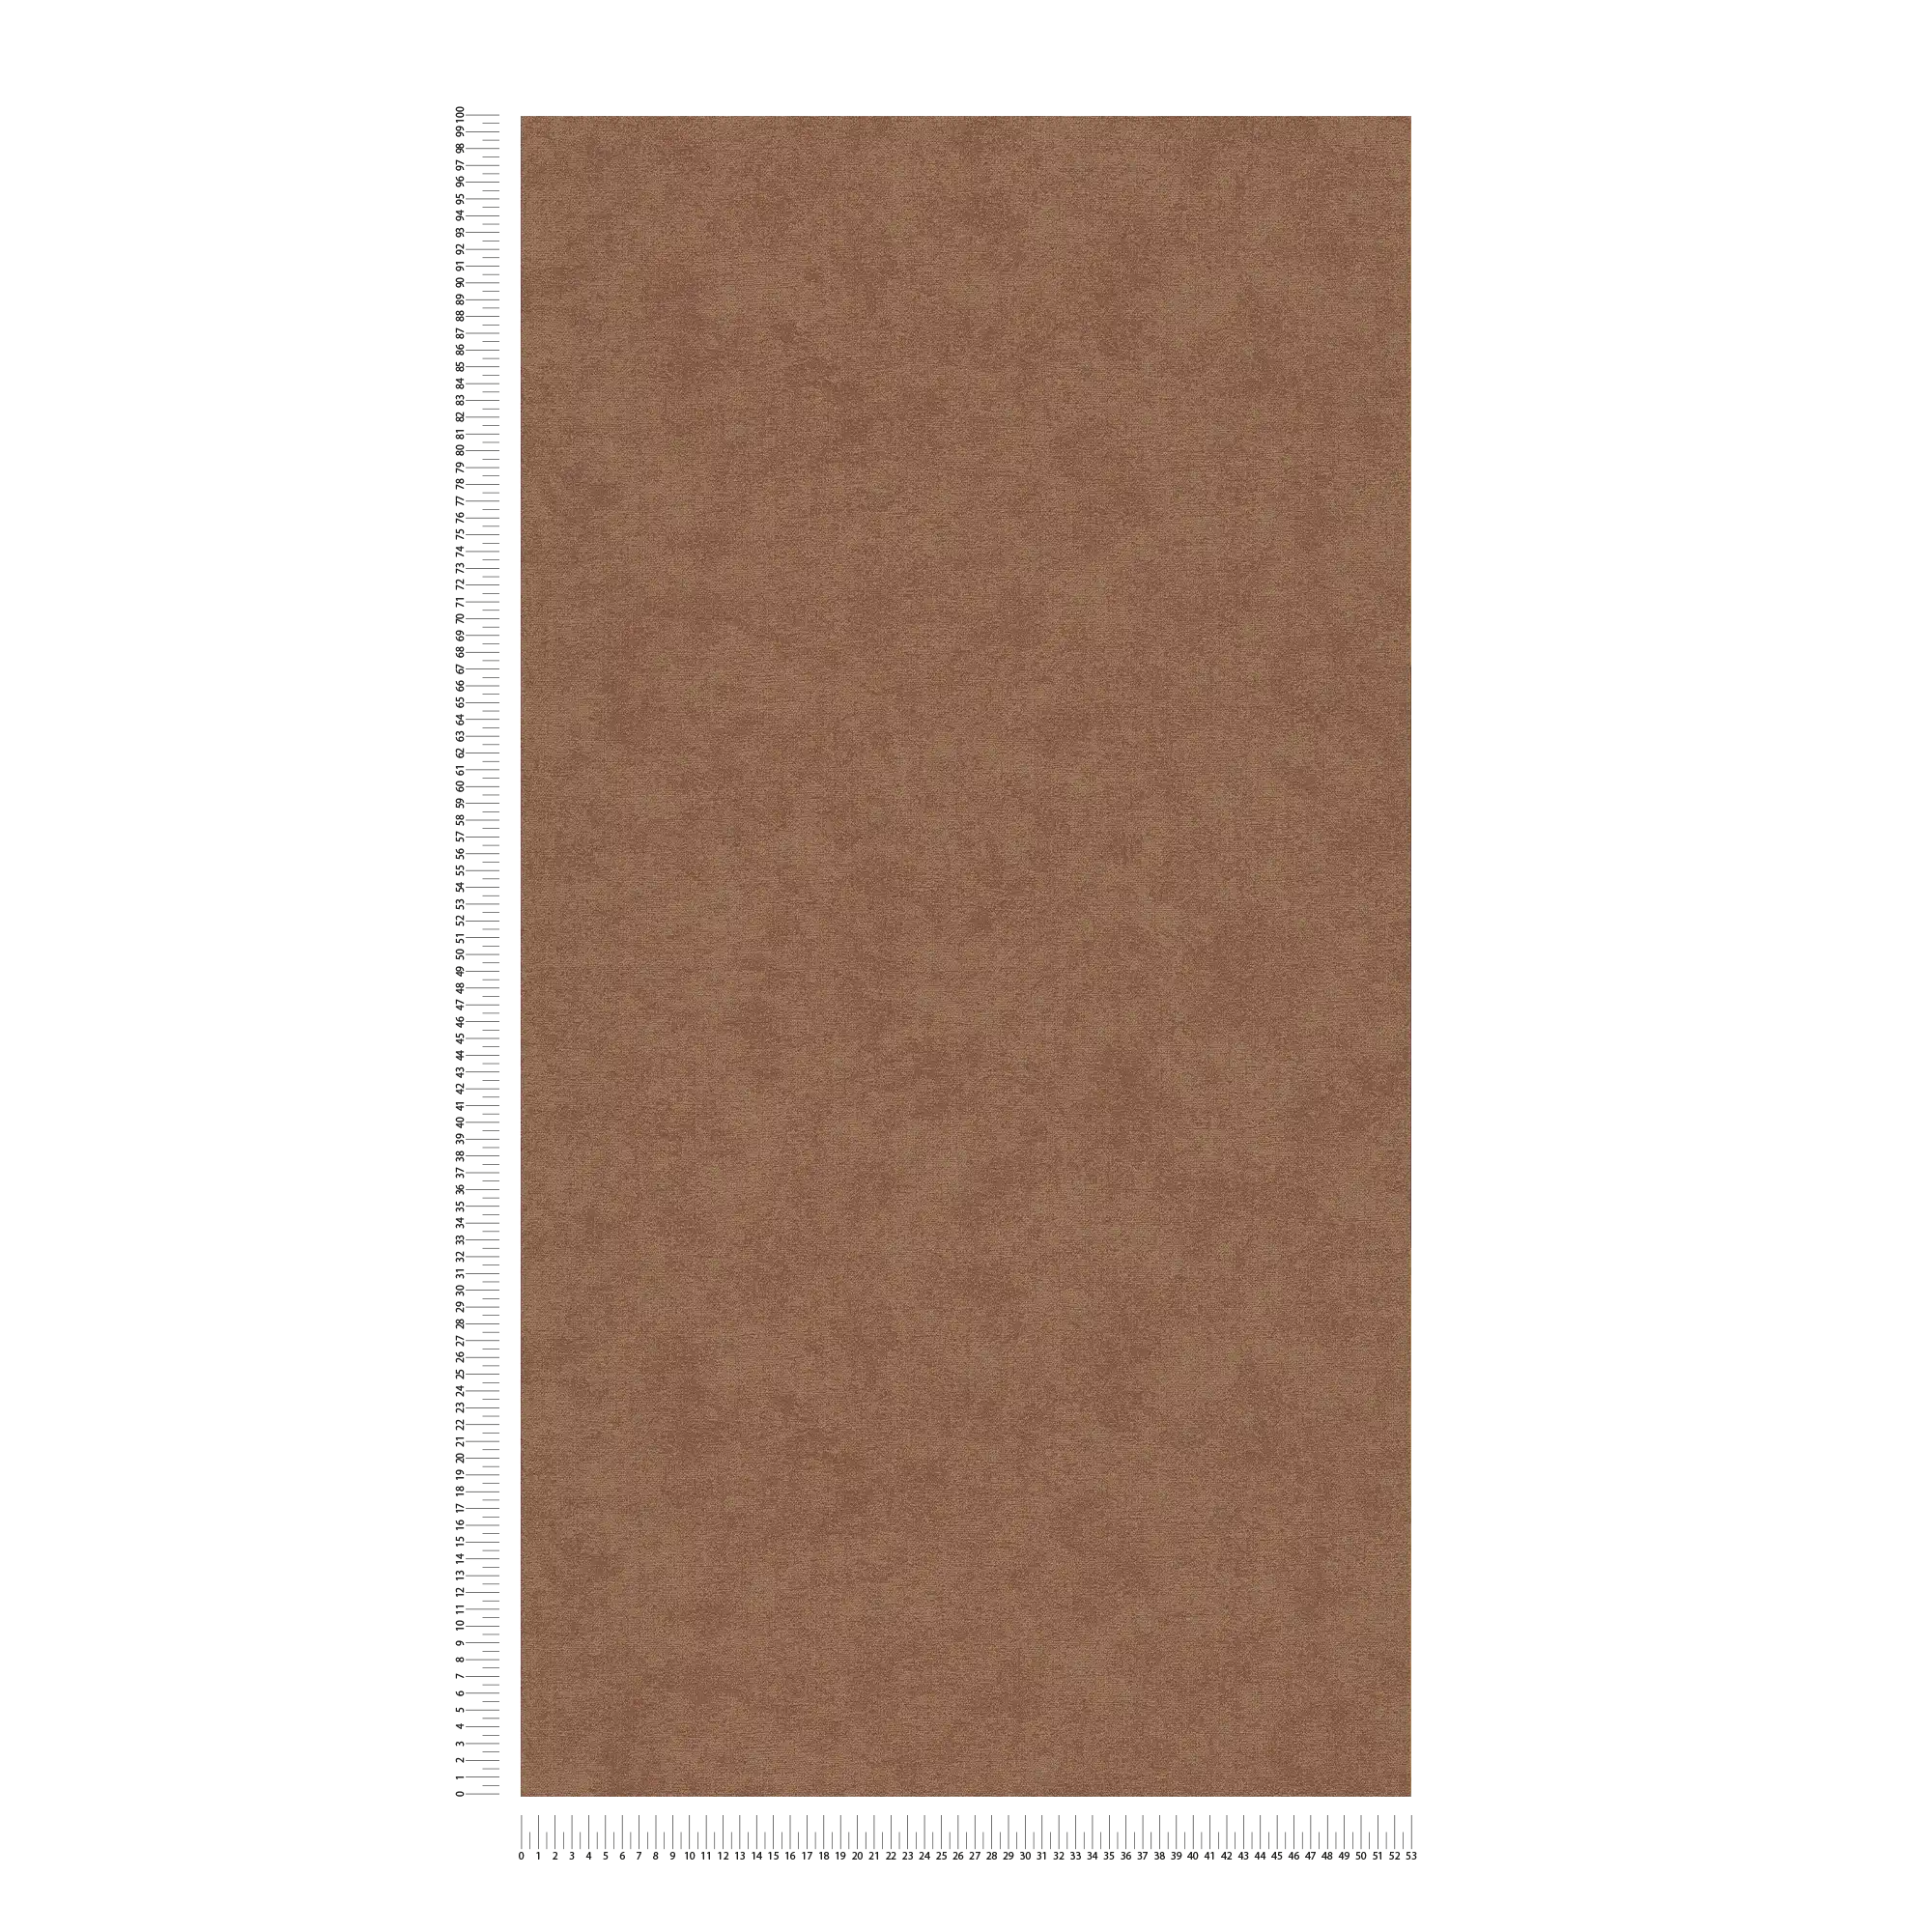             Carta da parati monocolore in tessuto non tessuto con texture sottile - marrone
        